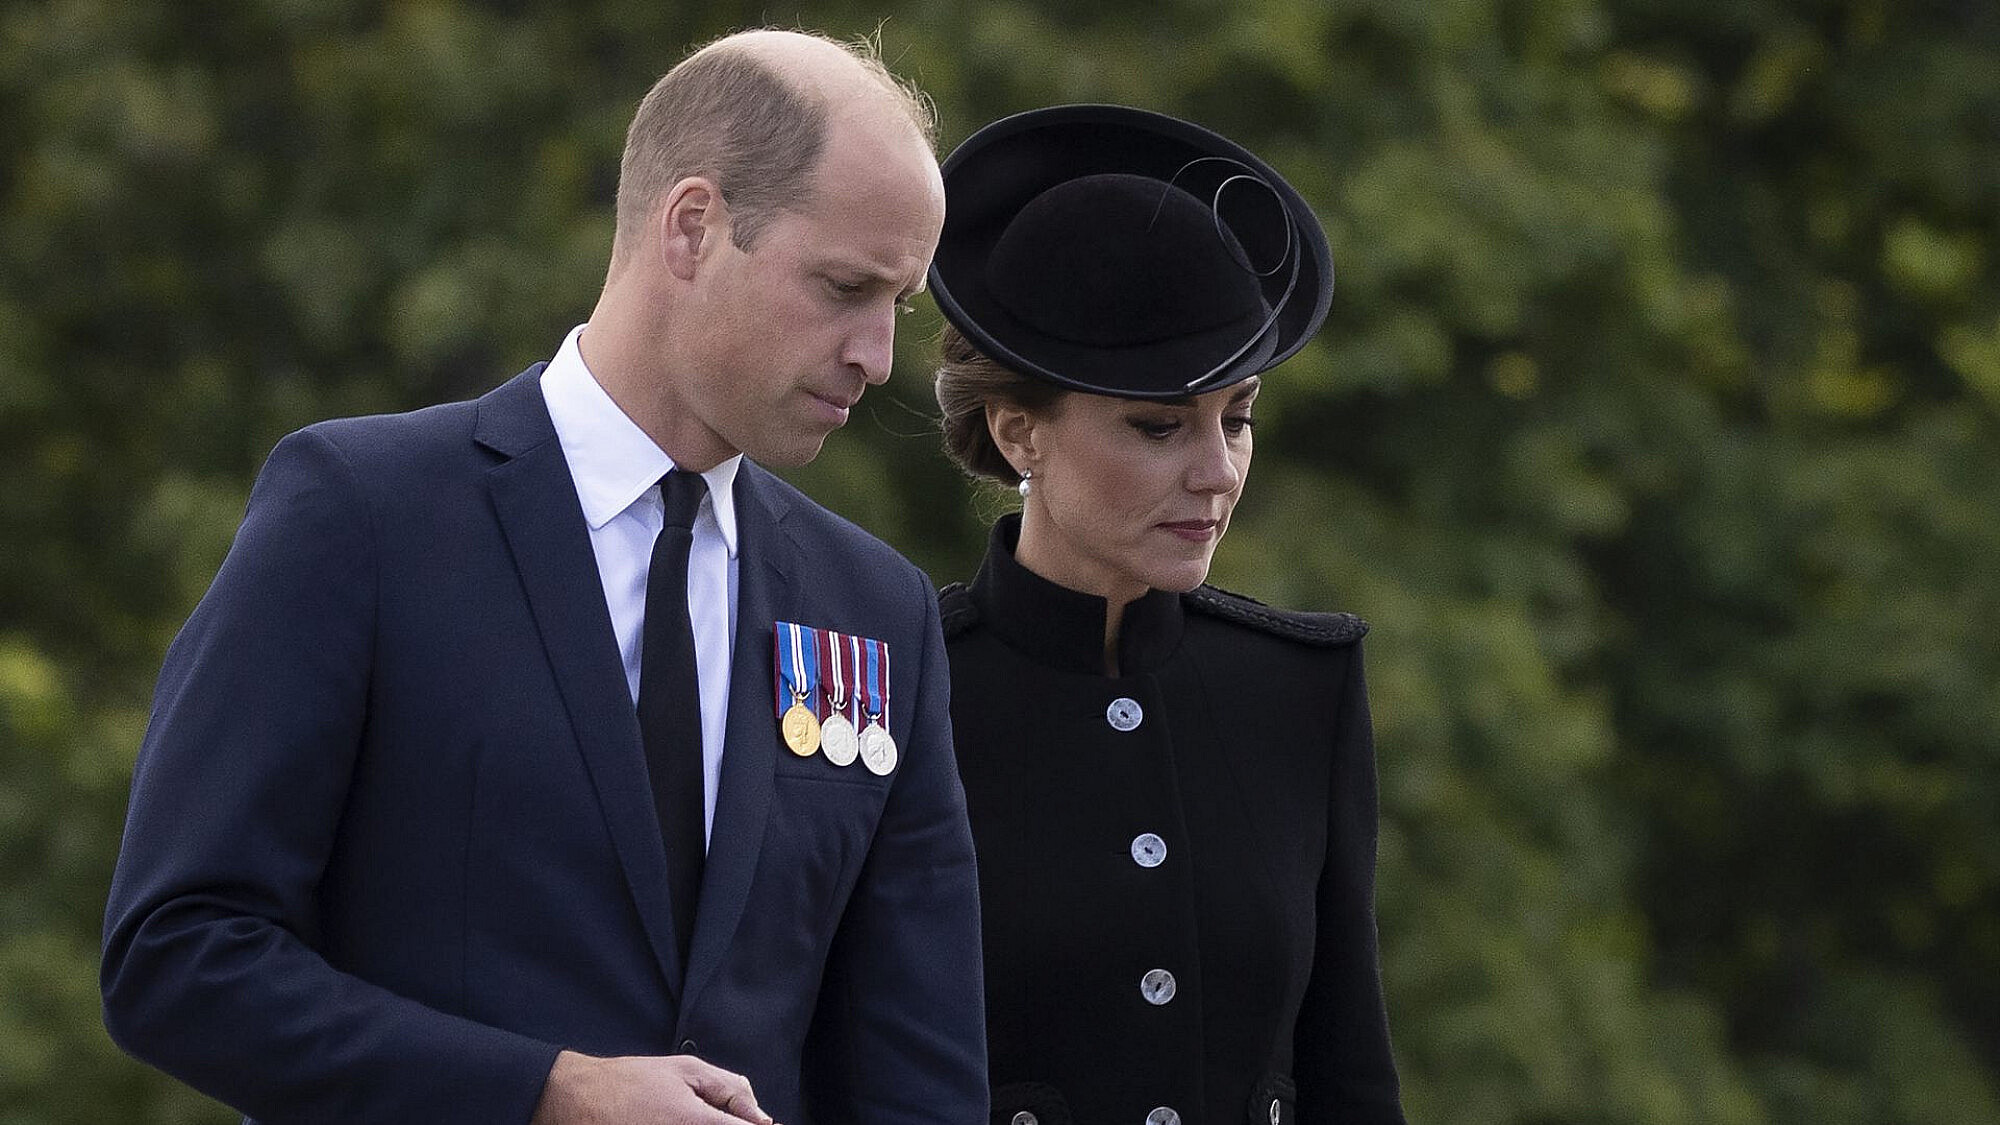 הנסיך וויליאם והנסיכה מוויילס קייט מידלטון בהכנות להלוויית המלכה אליזבת | צילום: Dan Kitwood/Getty Images